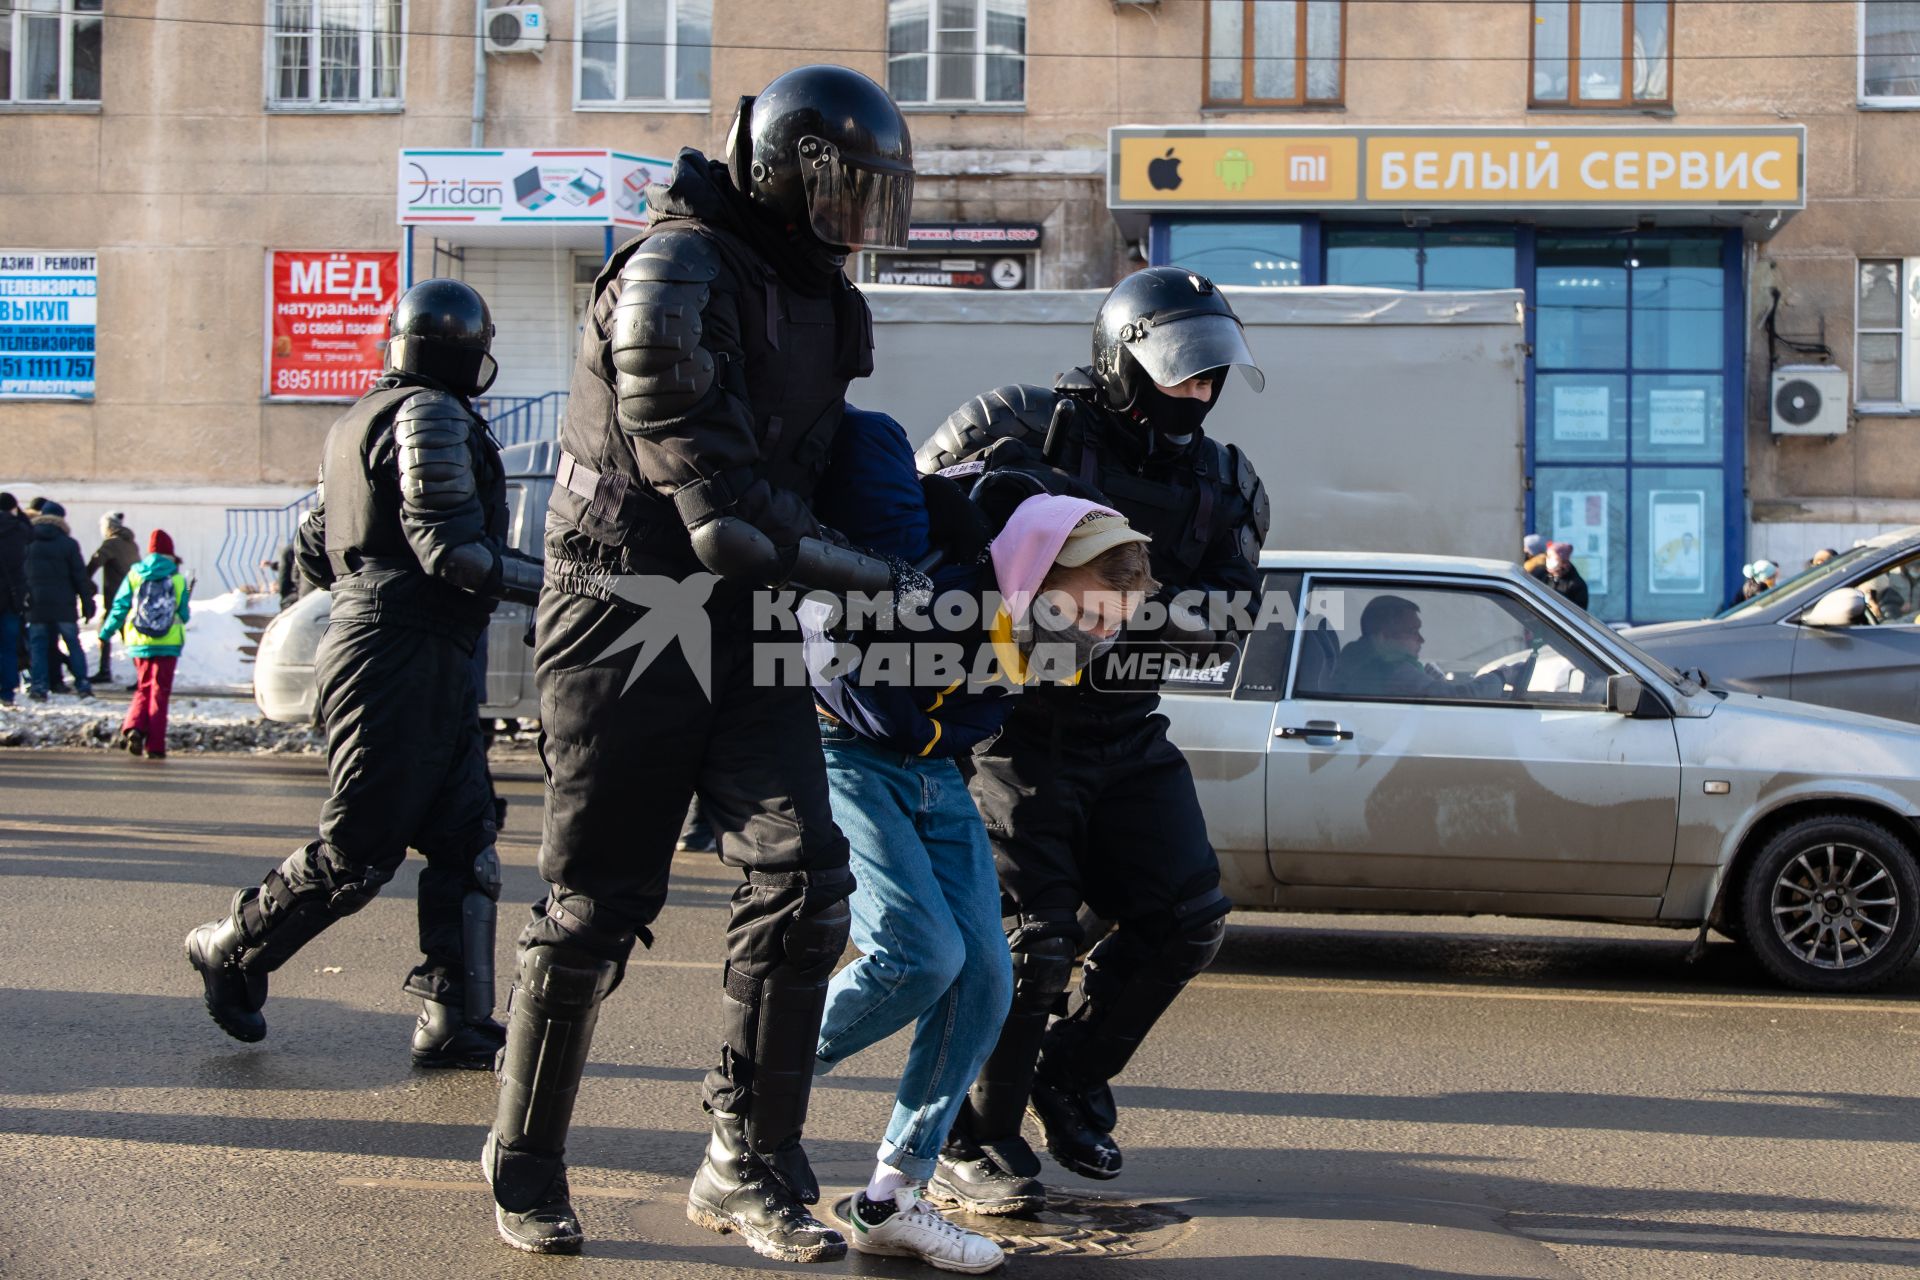 Челябинск. Сотрудники правоохранительных органов задерживают участника несанкционированной акции протеста в поддержку Алексея Навального.